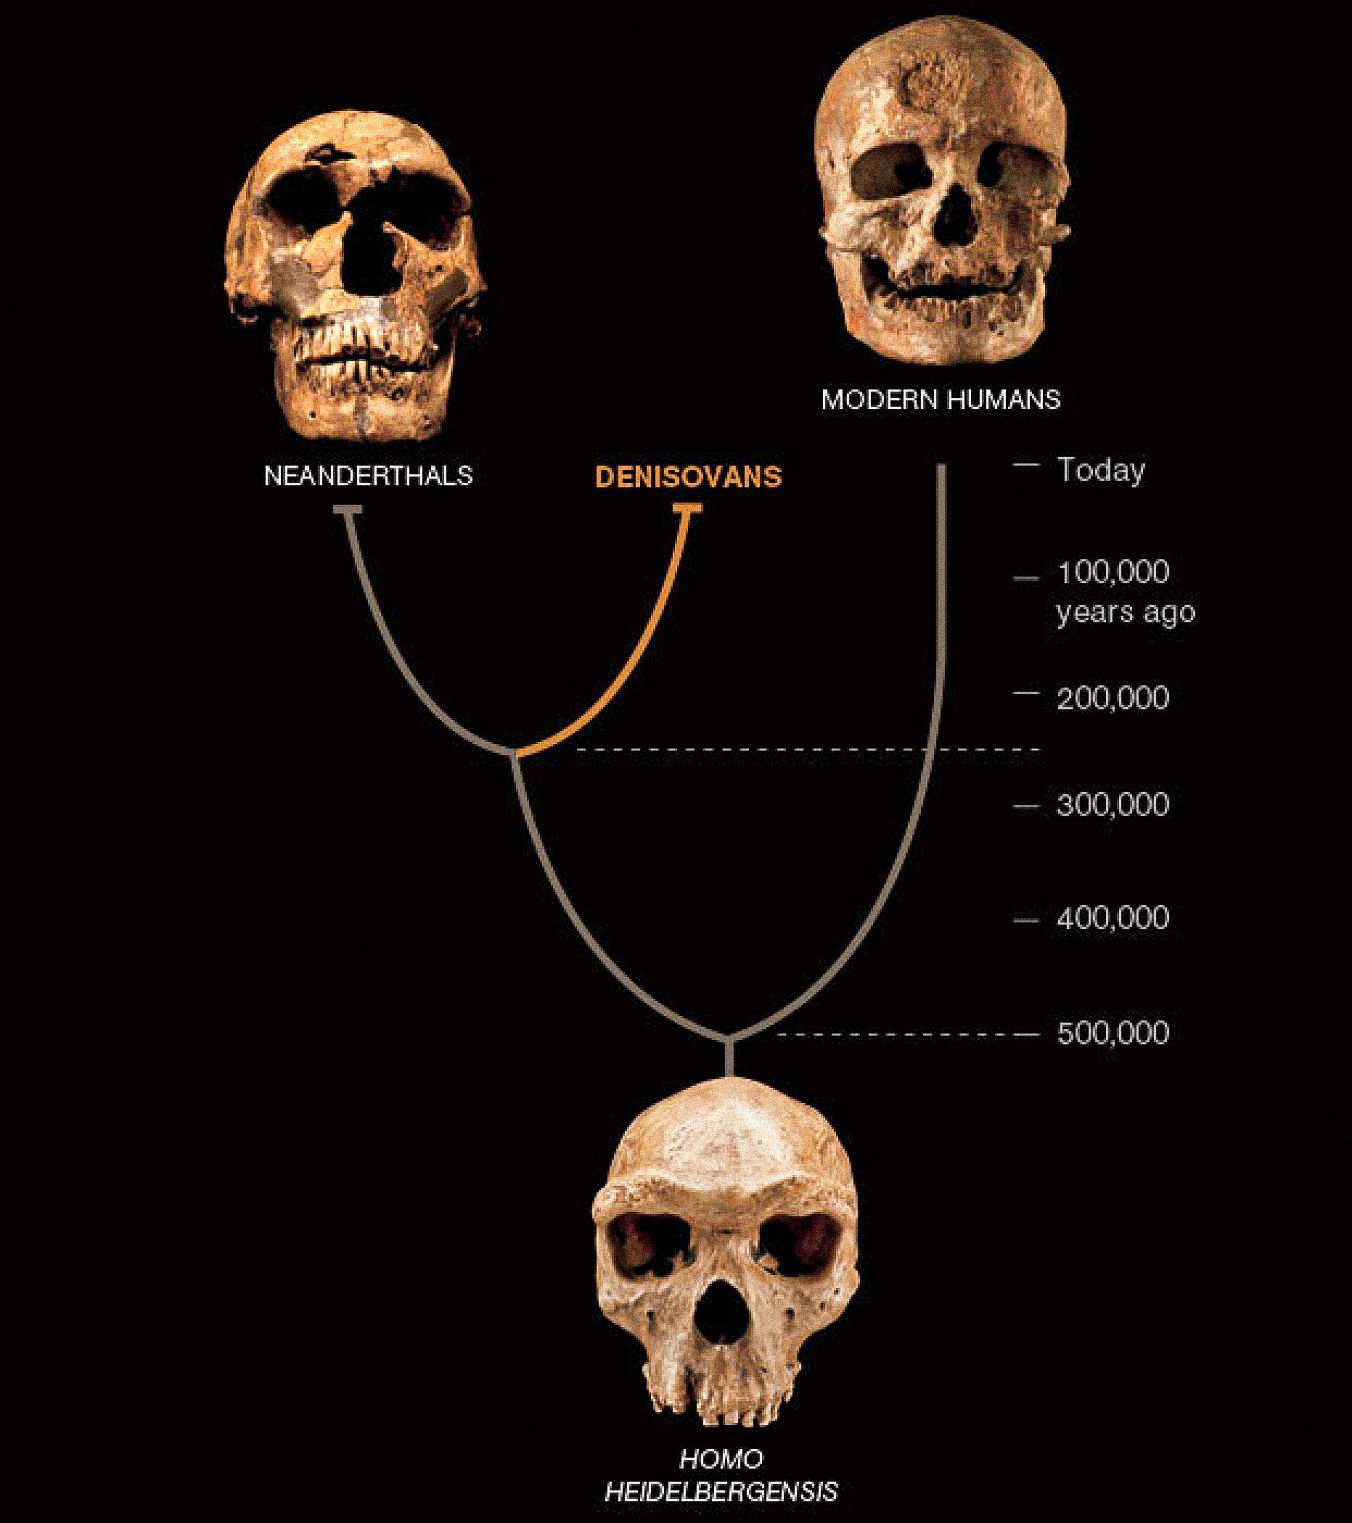 ប្រភេទទីបីនៃមនុស្សដែលមានឈ្មោះថា Denisovans ហាក់ដូចជាបានរួមរស់នៅអាស៊ីជាមួយ Neanderthals និងមនុស្សសម័យទំនើបដំបូង។ ពីរចុងក្រោយត្រូវបានគេស្គាល់ពីហ្វូស៊ីលនិងវត្ថុបុរាណដ៏សម្បូរបែប។ រហូតមកដល់ពេលនេះ Denisovans ត្រូវបានកំណត់ត្រឹមតែ DNA ពីបន្ទះឈីបឆ្អឹងមួយ និងធ្មេញពីរប៉ុណ្ណោះ ប៉ុន្តែវាបង្ហាញពីការកែប្រែថ្មីចំពោះរឿងរបស់មនុស្ស។